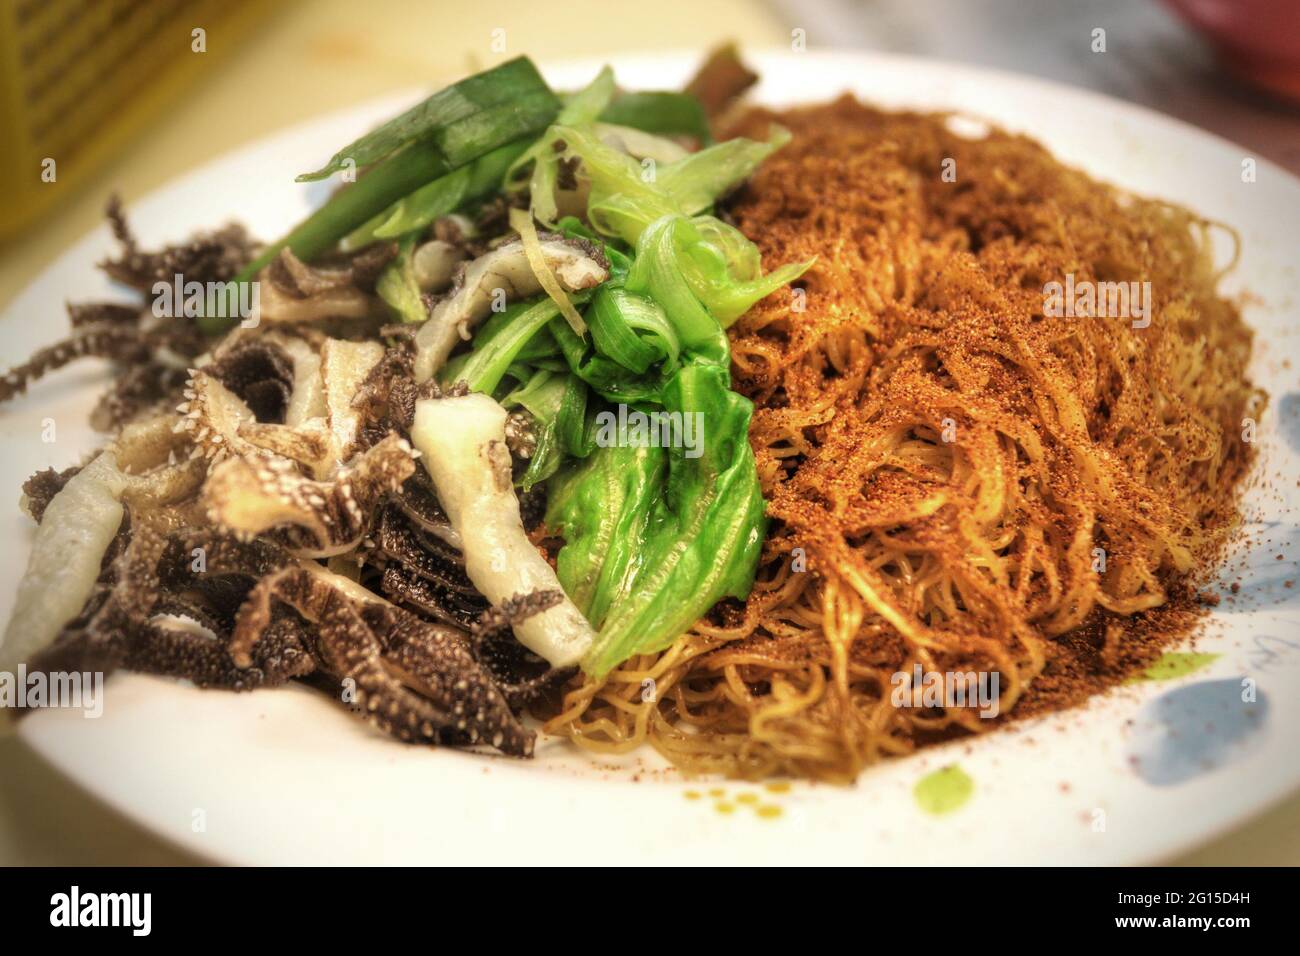 Hong Kong Kailan in Dried Shrimp Roe - Noob Cook Recipes